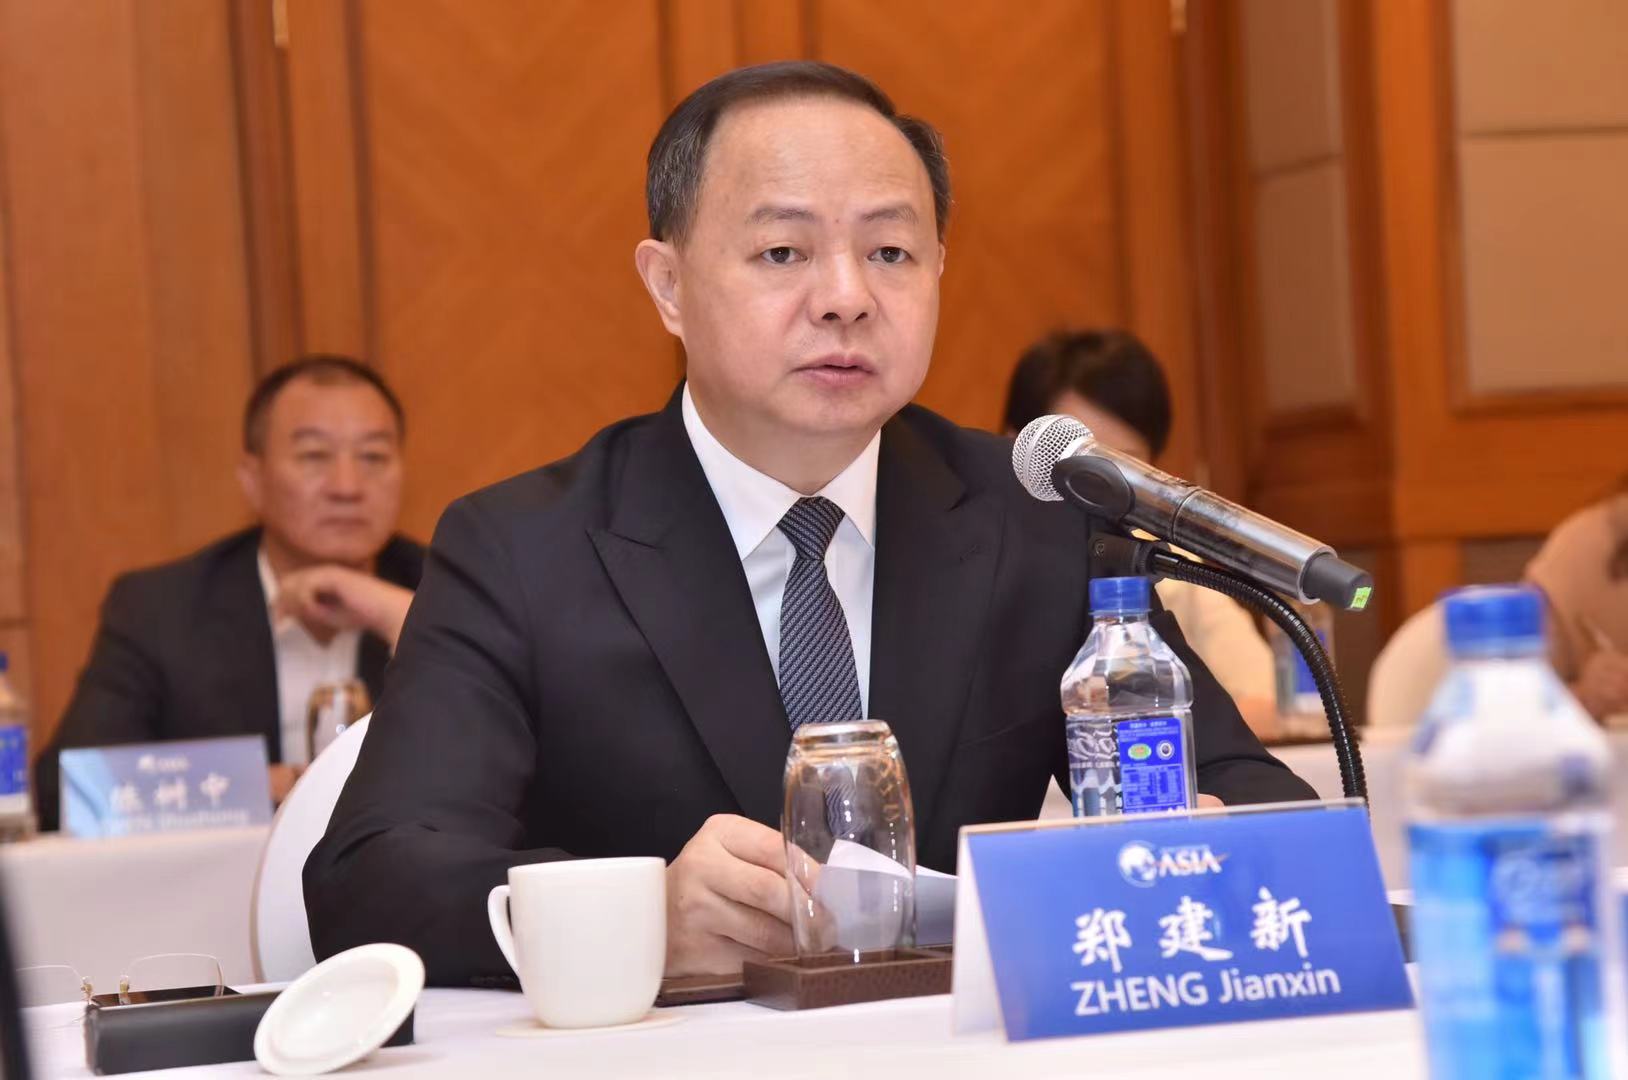 长沙市委副书记、市长、湖南湘江新区党工委书记郑建新讲话。